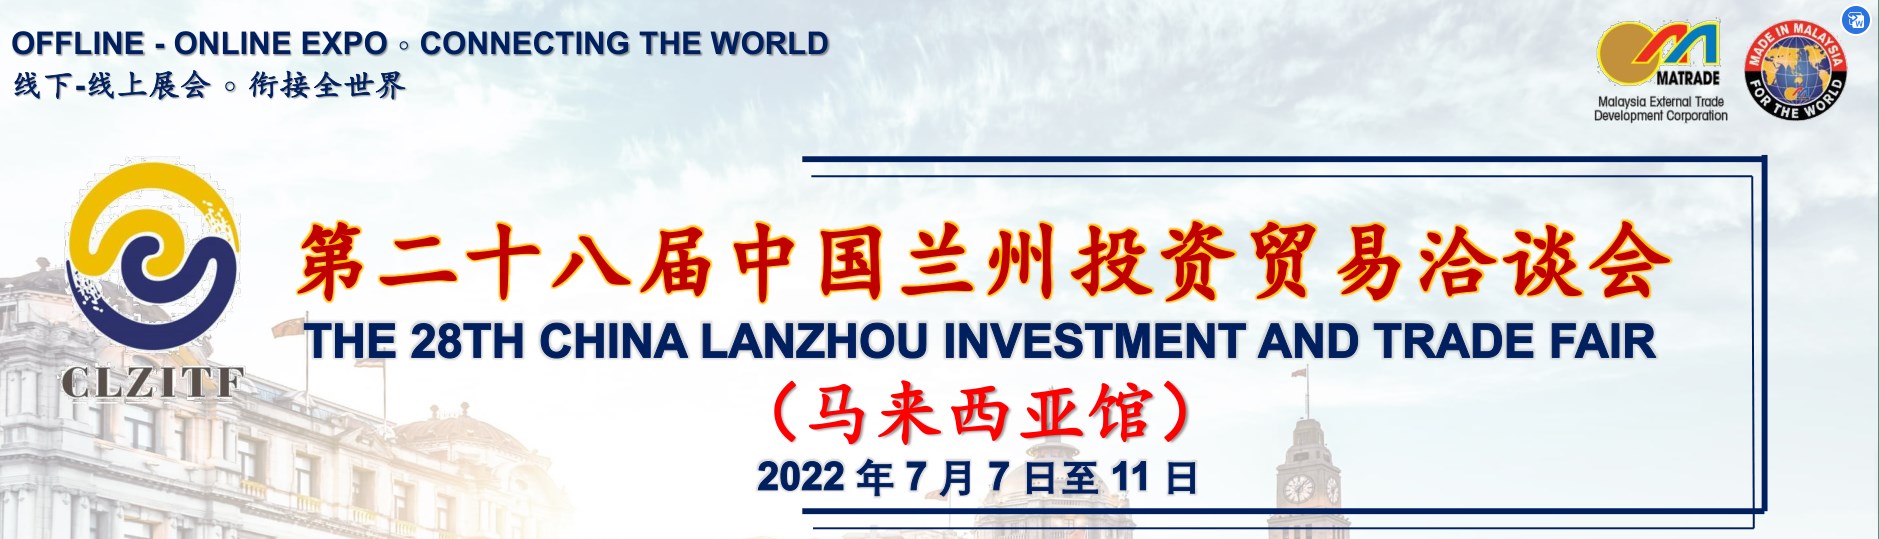 Pameran Investasi dan Perdagangan China Lanzhou ke-28